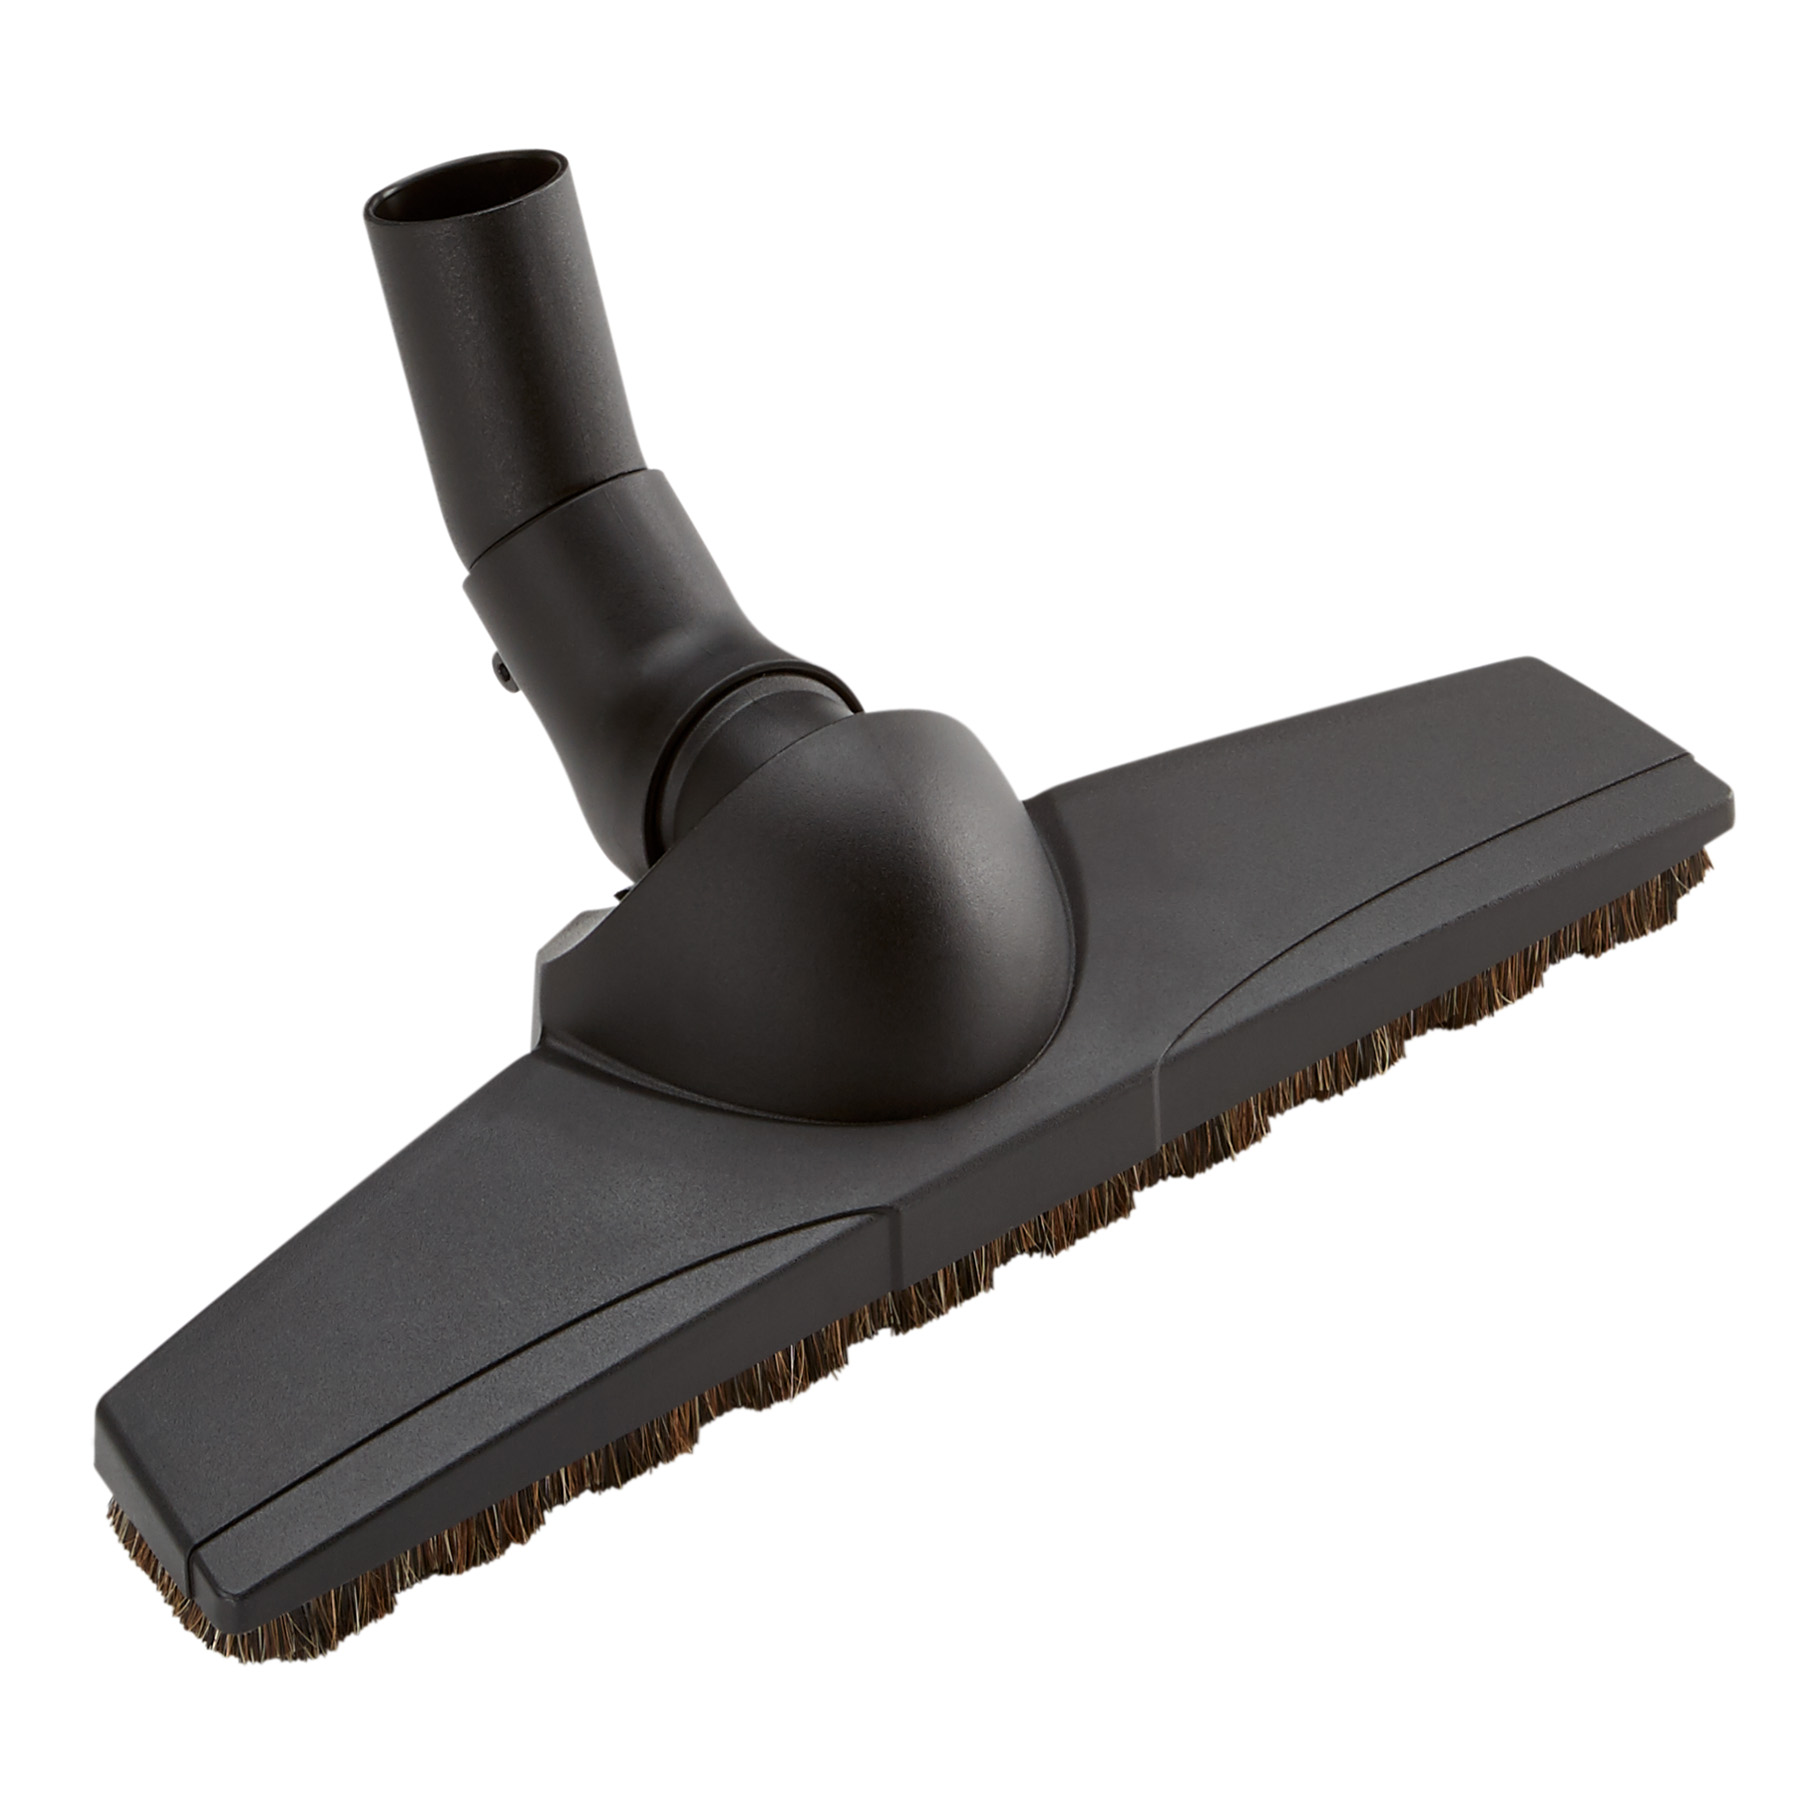 NuTone® Central Vacuum Premium 13-Inch Wide Turn & Twist Floor Brush